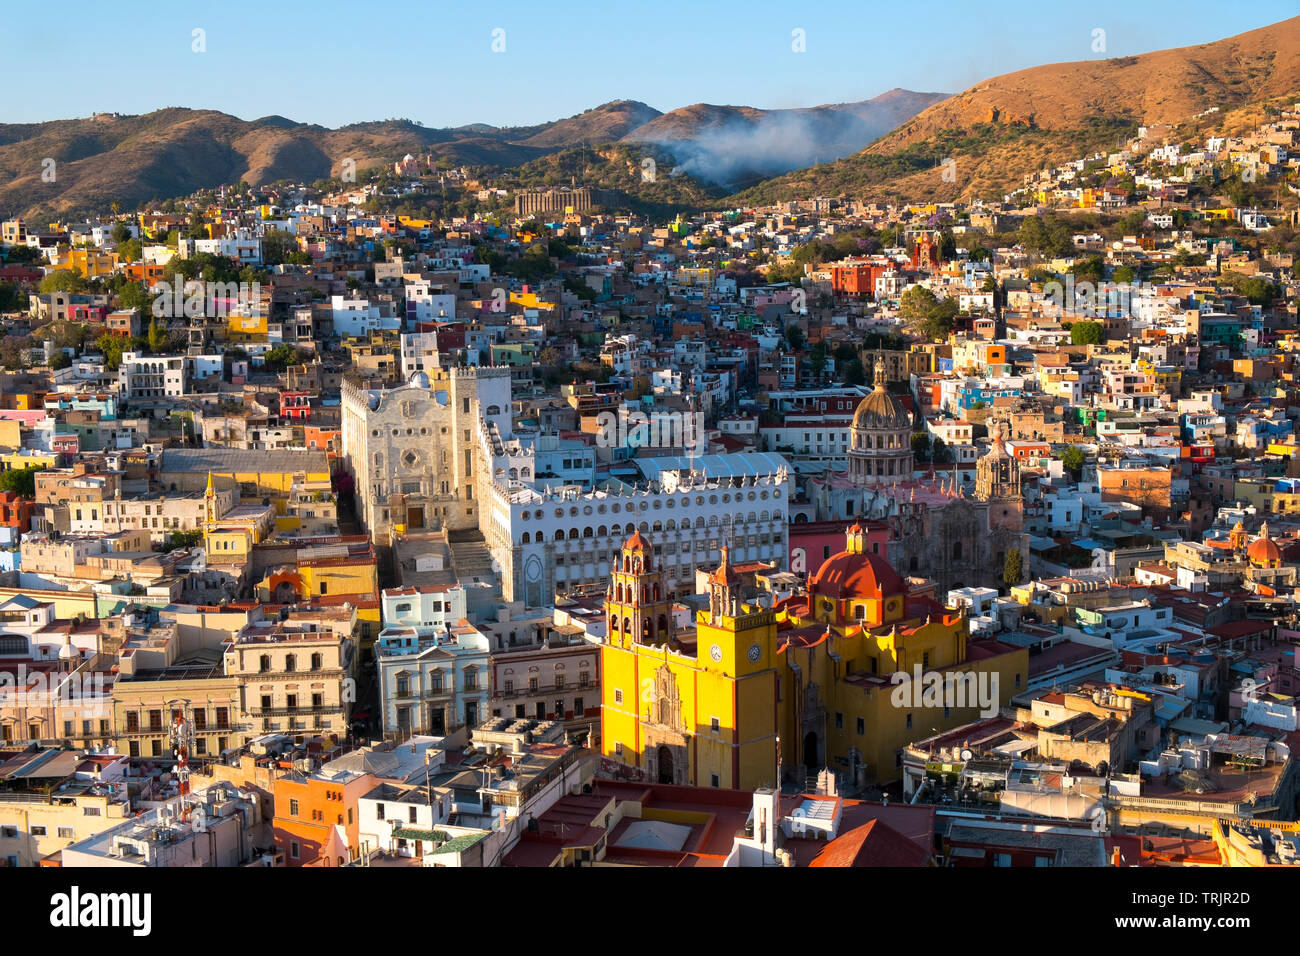 View over Guanajuato, Mexico Stock Photo